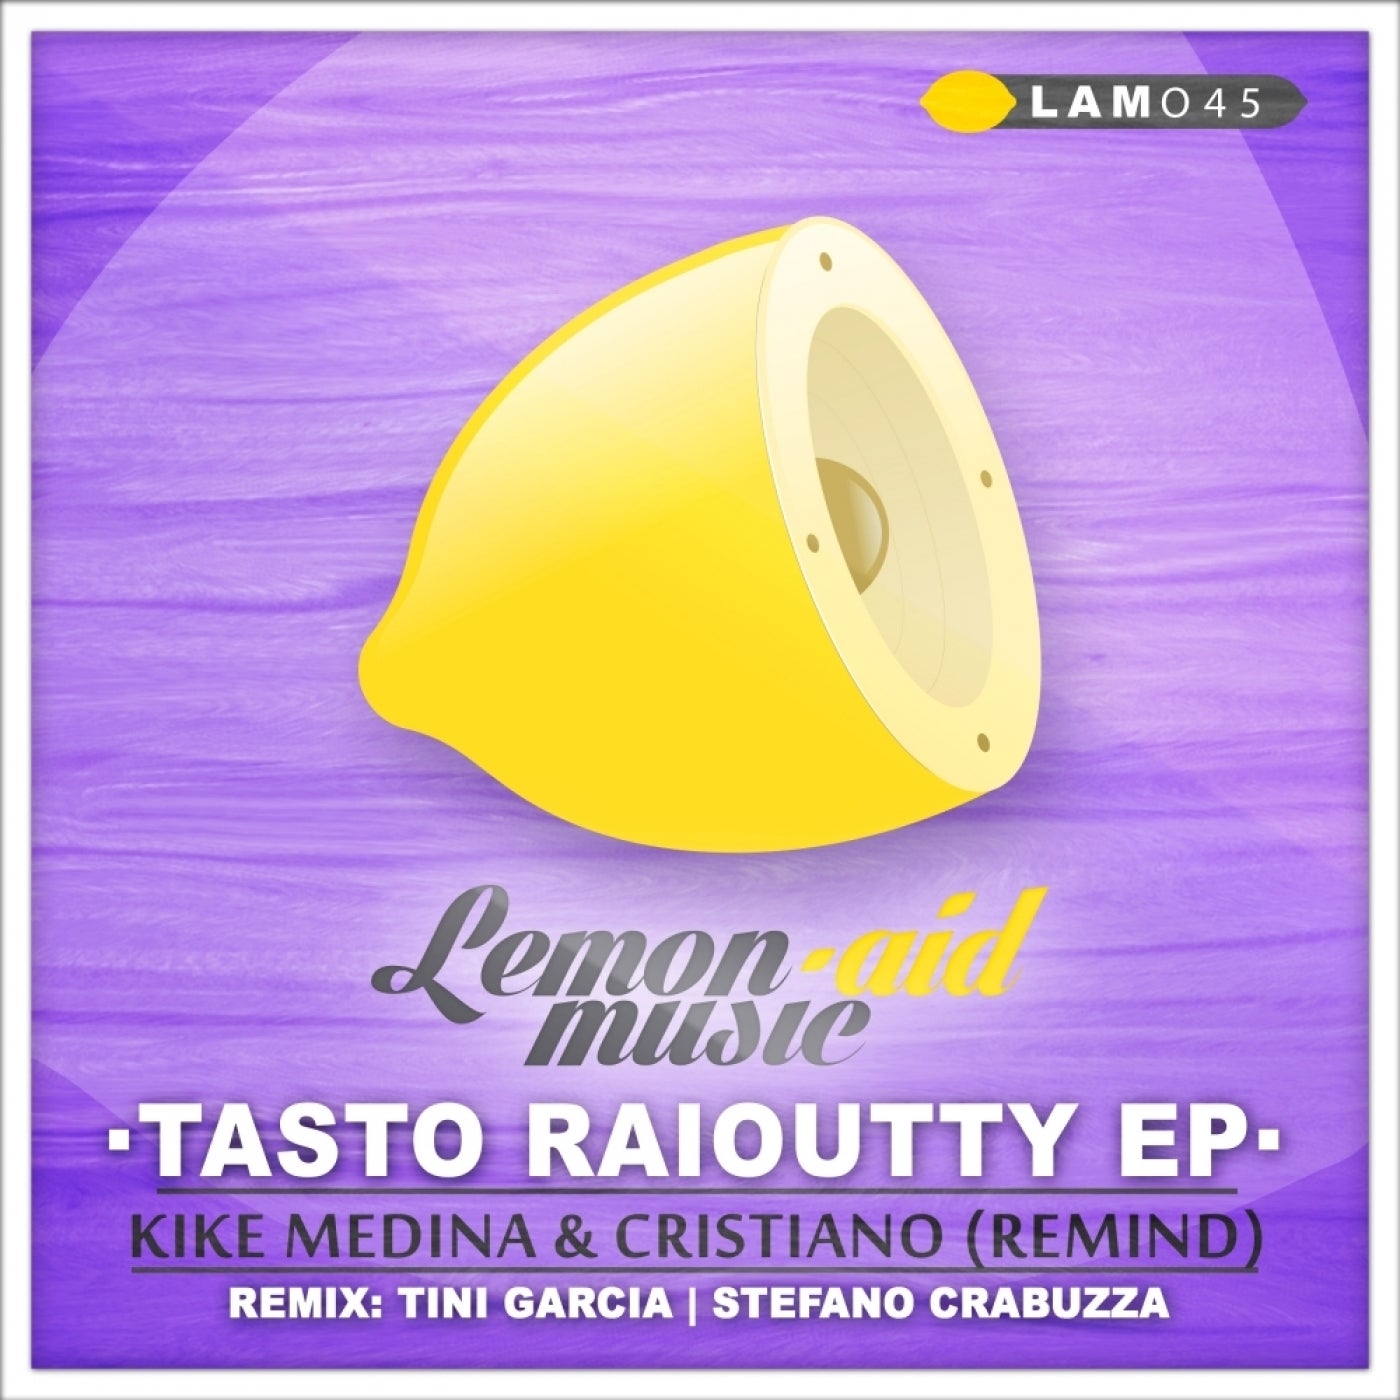 Tasto Raioutty EP